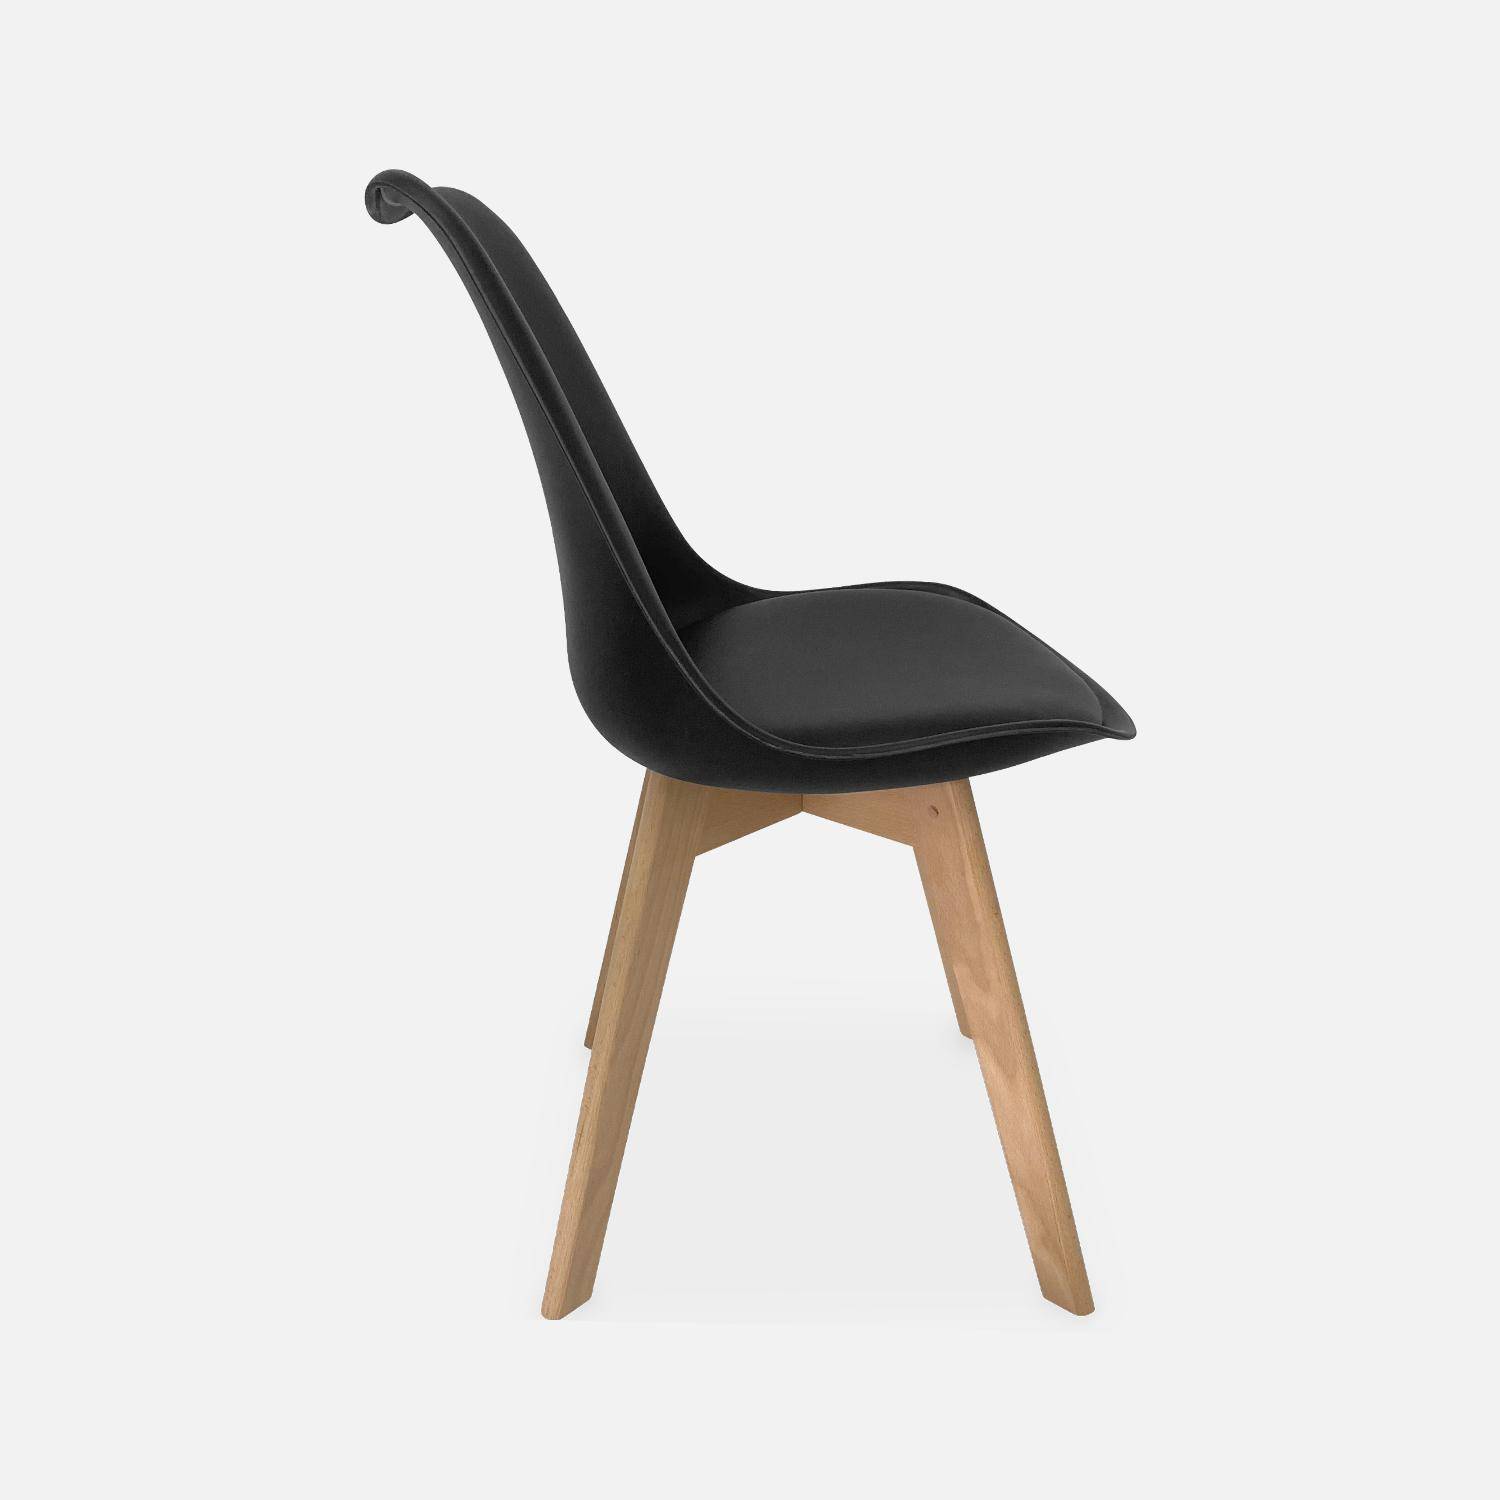 Juego de 6 sillas escandinavas, patas de madera de haya, monoplaza, negro,sweeek,Photo6